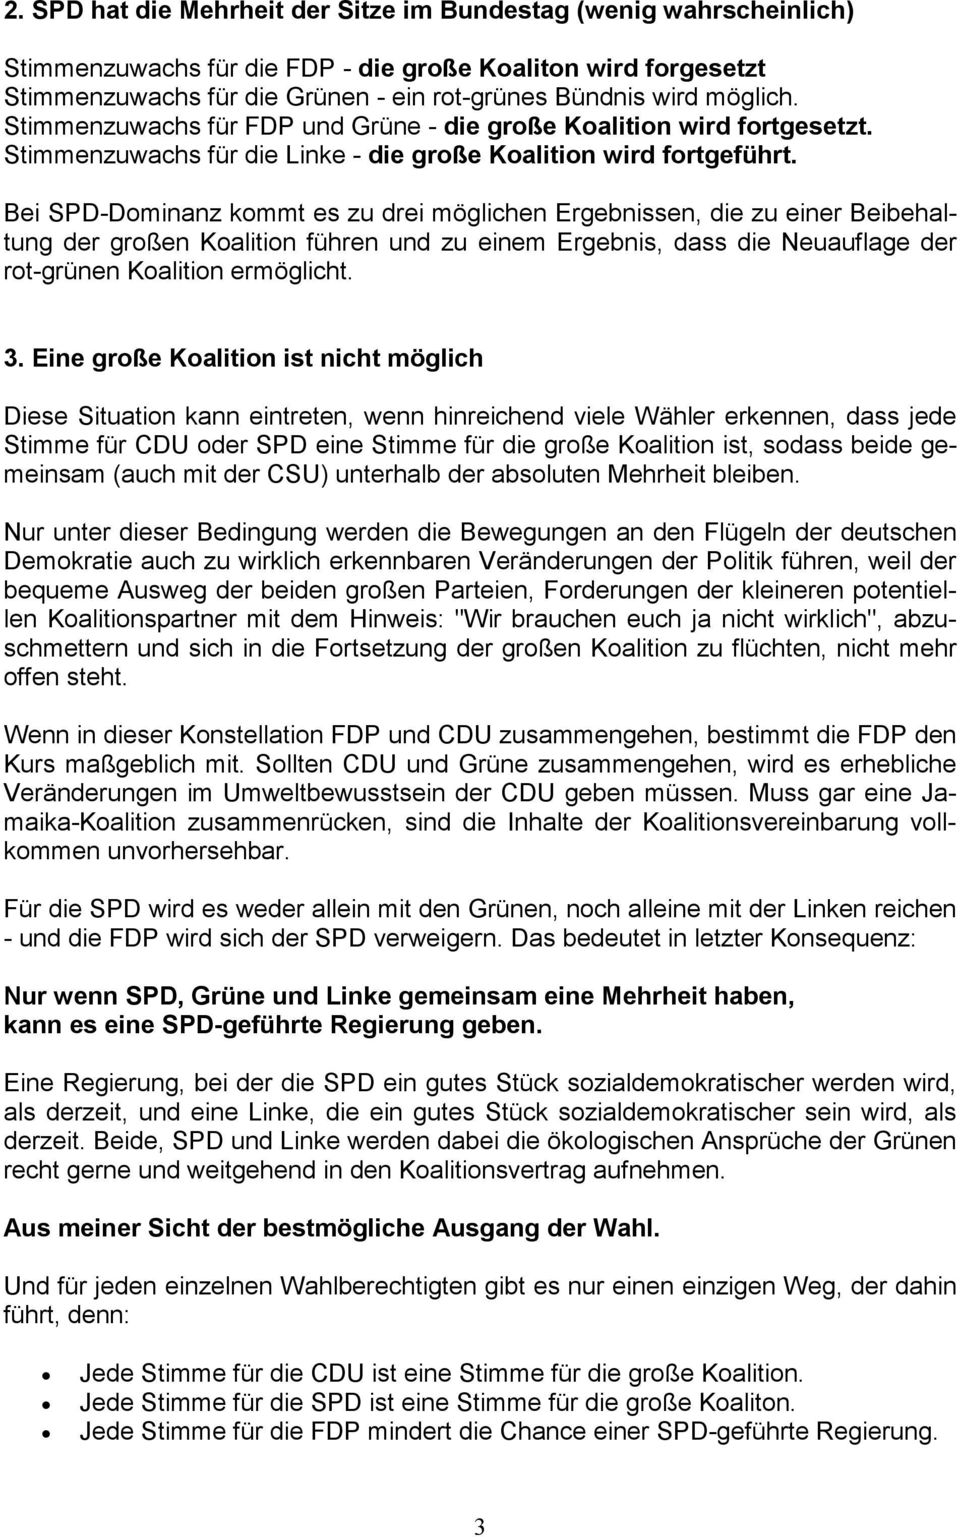 Bei SPD-Dominanz kommt es zu drei möglichen Ergebnissen, die zu einer Beibehaltung der großen Koalition führen und zu einem Ergebnis, dass die Neuauflage der rot-grünen Koalition ermöglicht. 3.